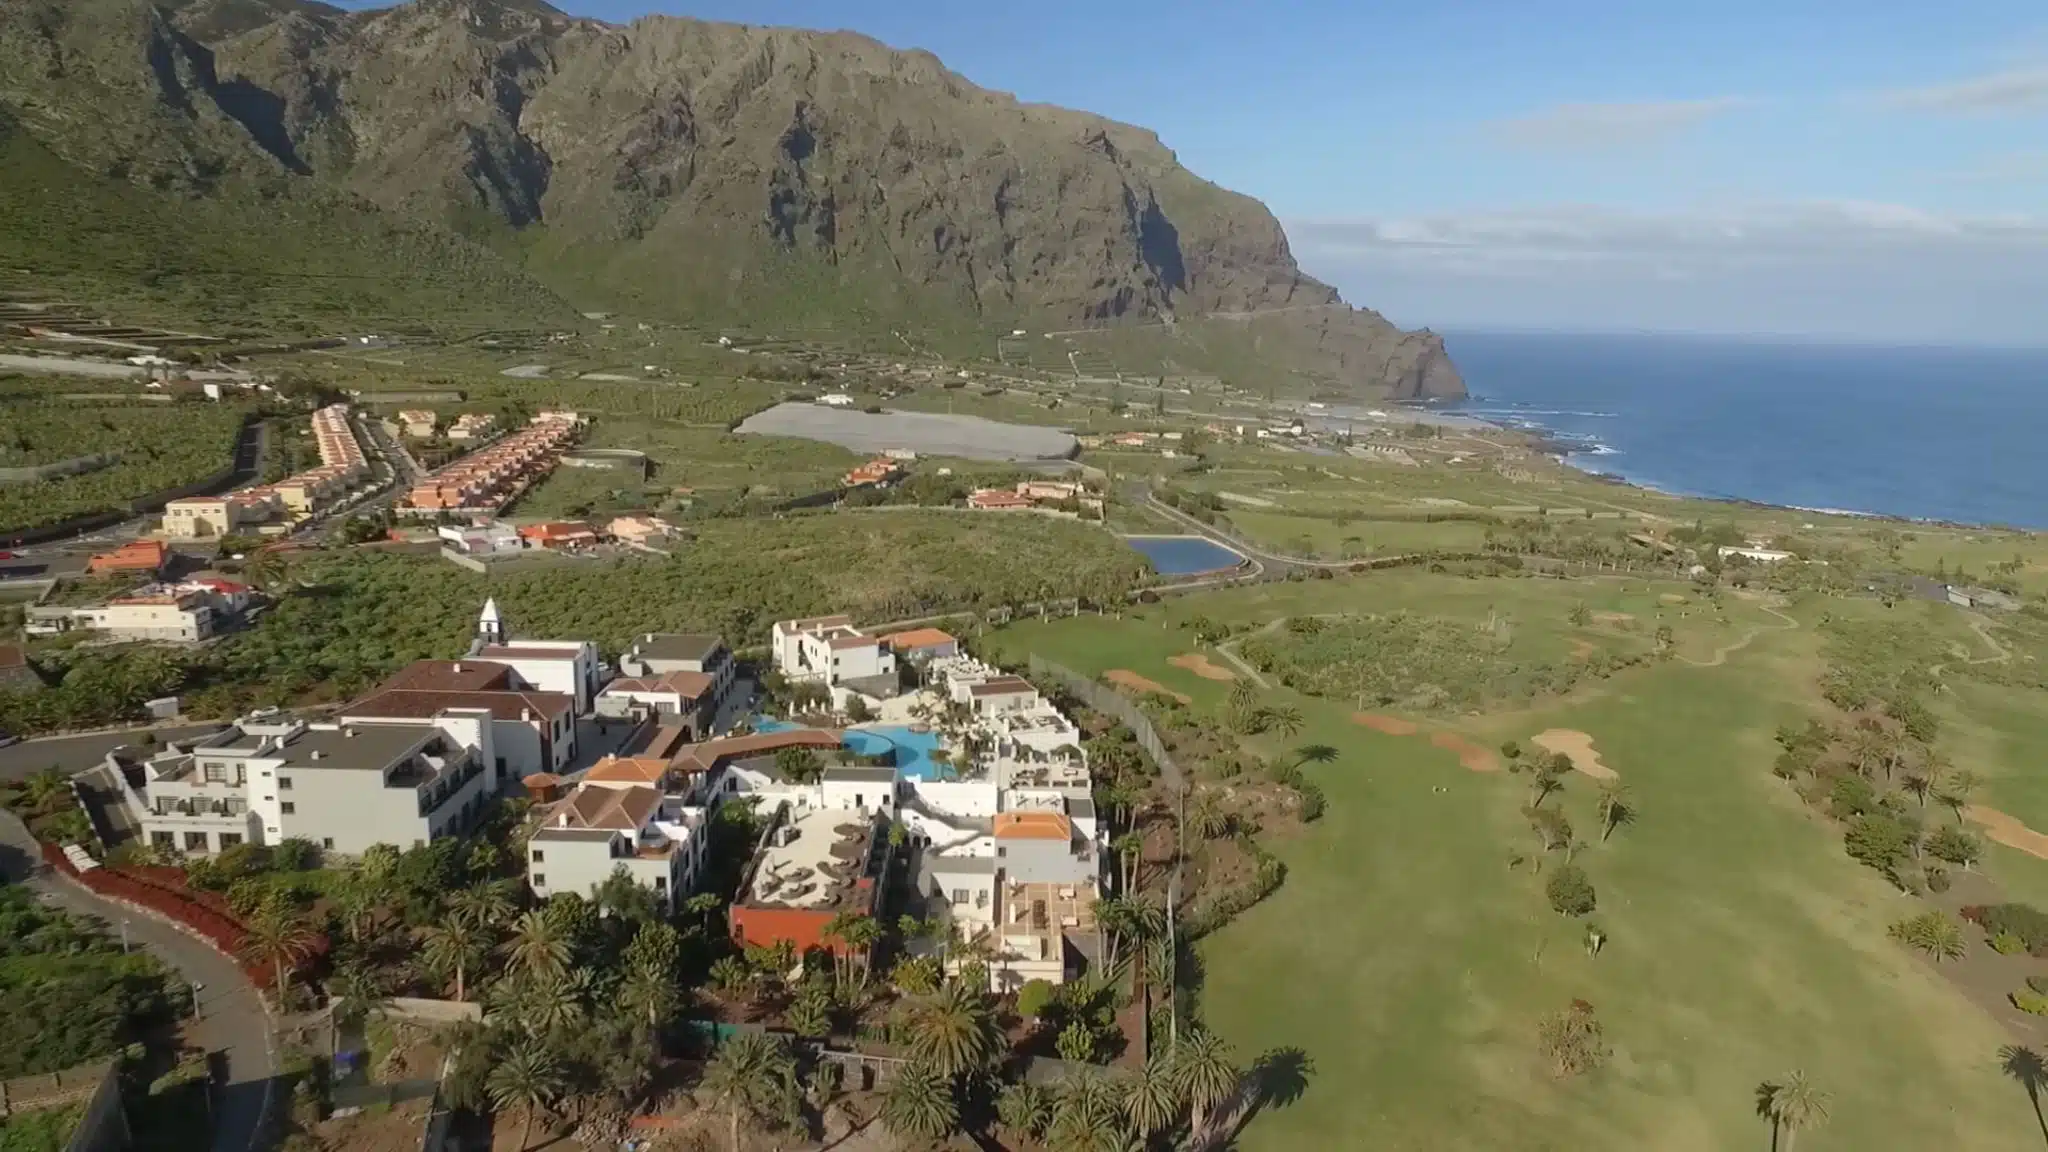 Buenavista Golf Club auf den Kanarischen Inseln, Teneriffa in Spanien